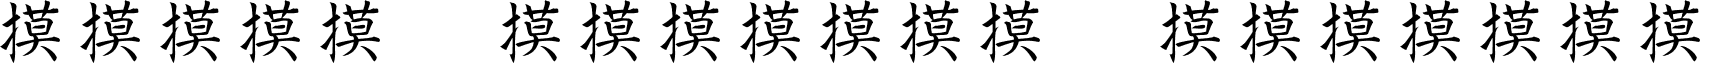 Kanji Special Regular KanjiSpecial.ttf